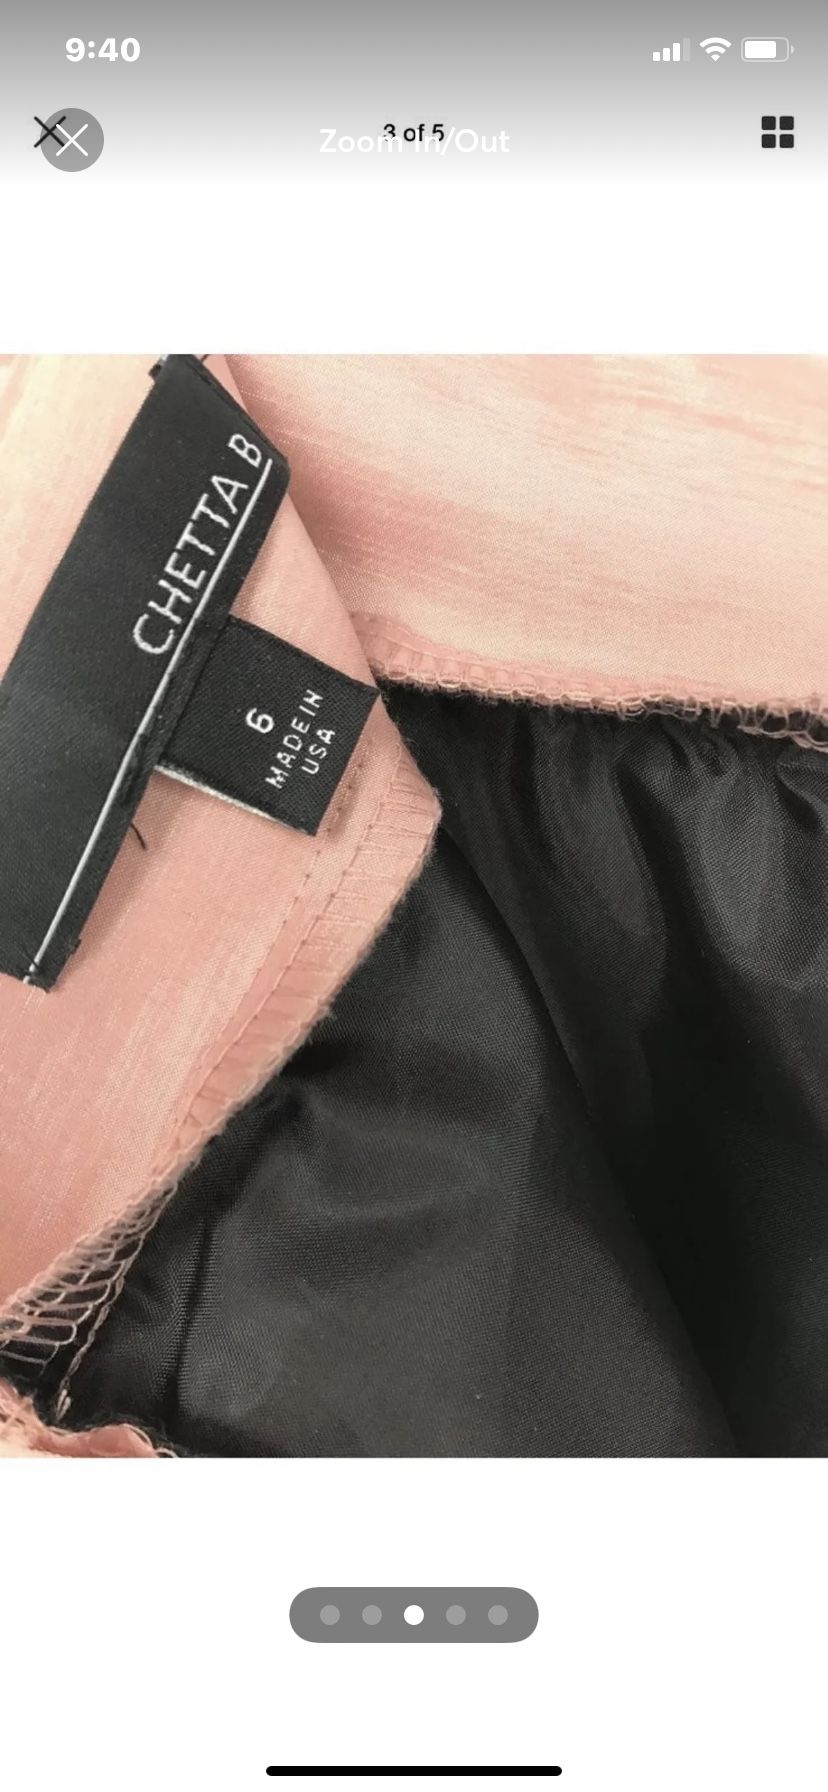 Chetta B. Full Midi Skirt Metallic Beige Lined Tulle Size 6 Made in USA